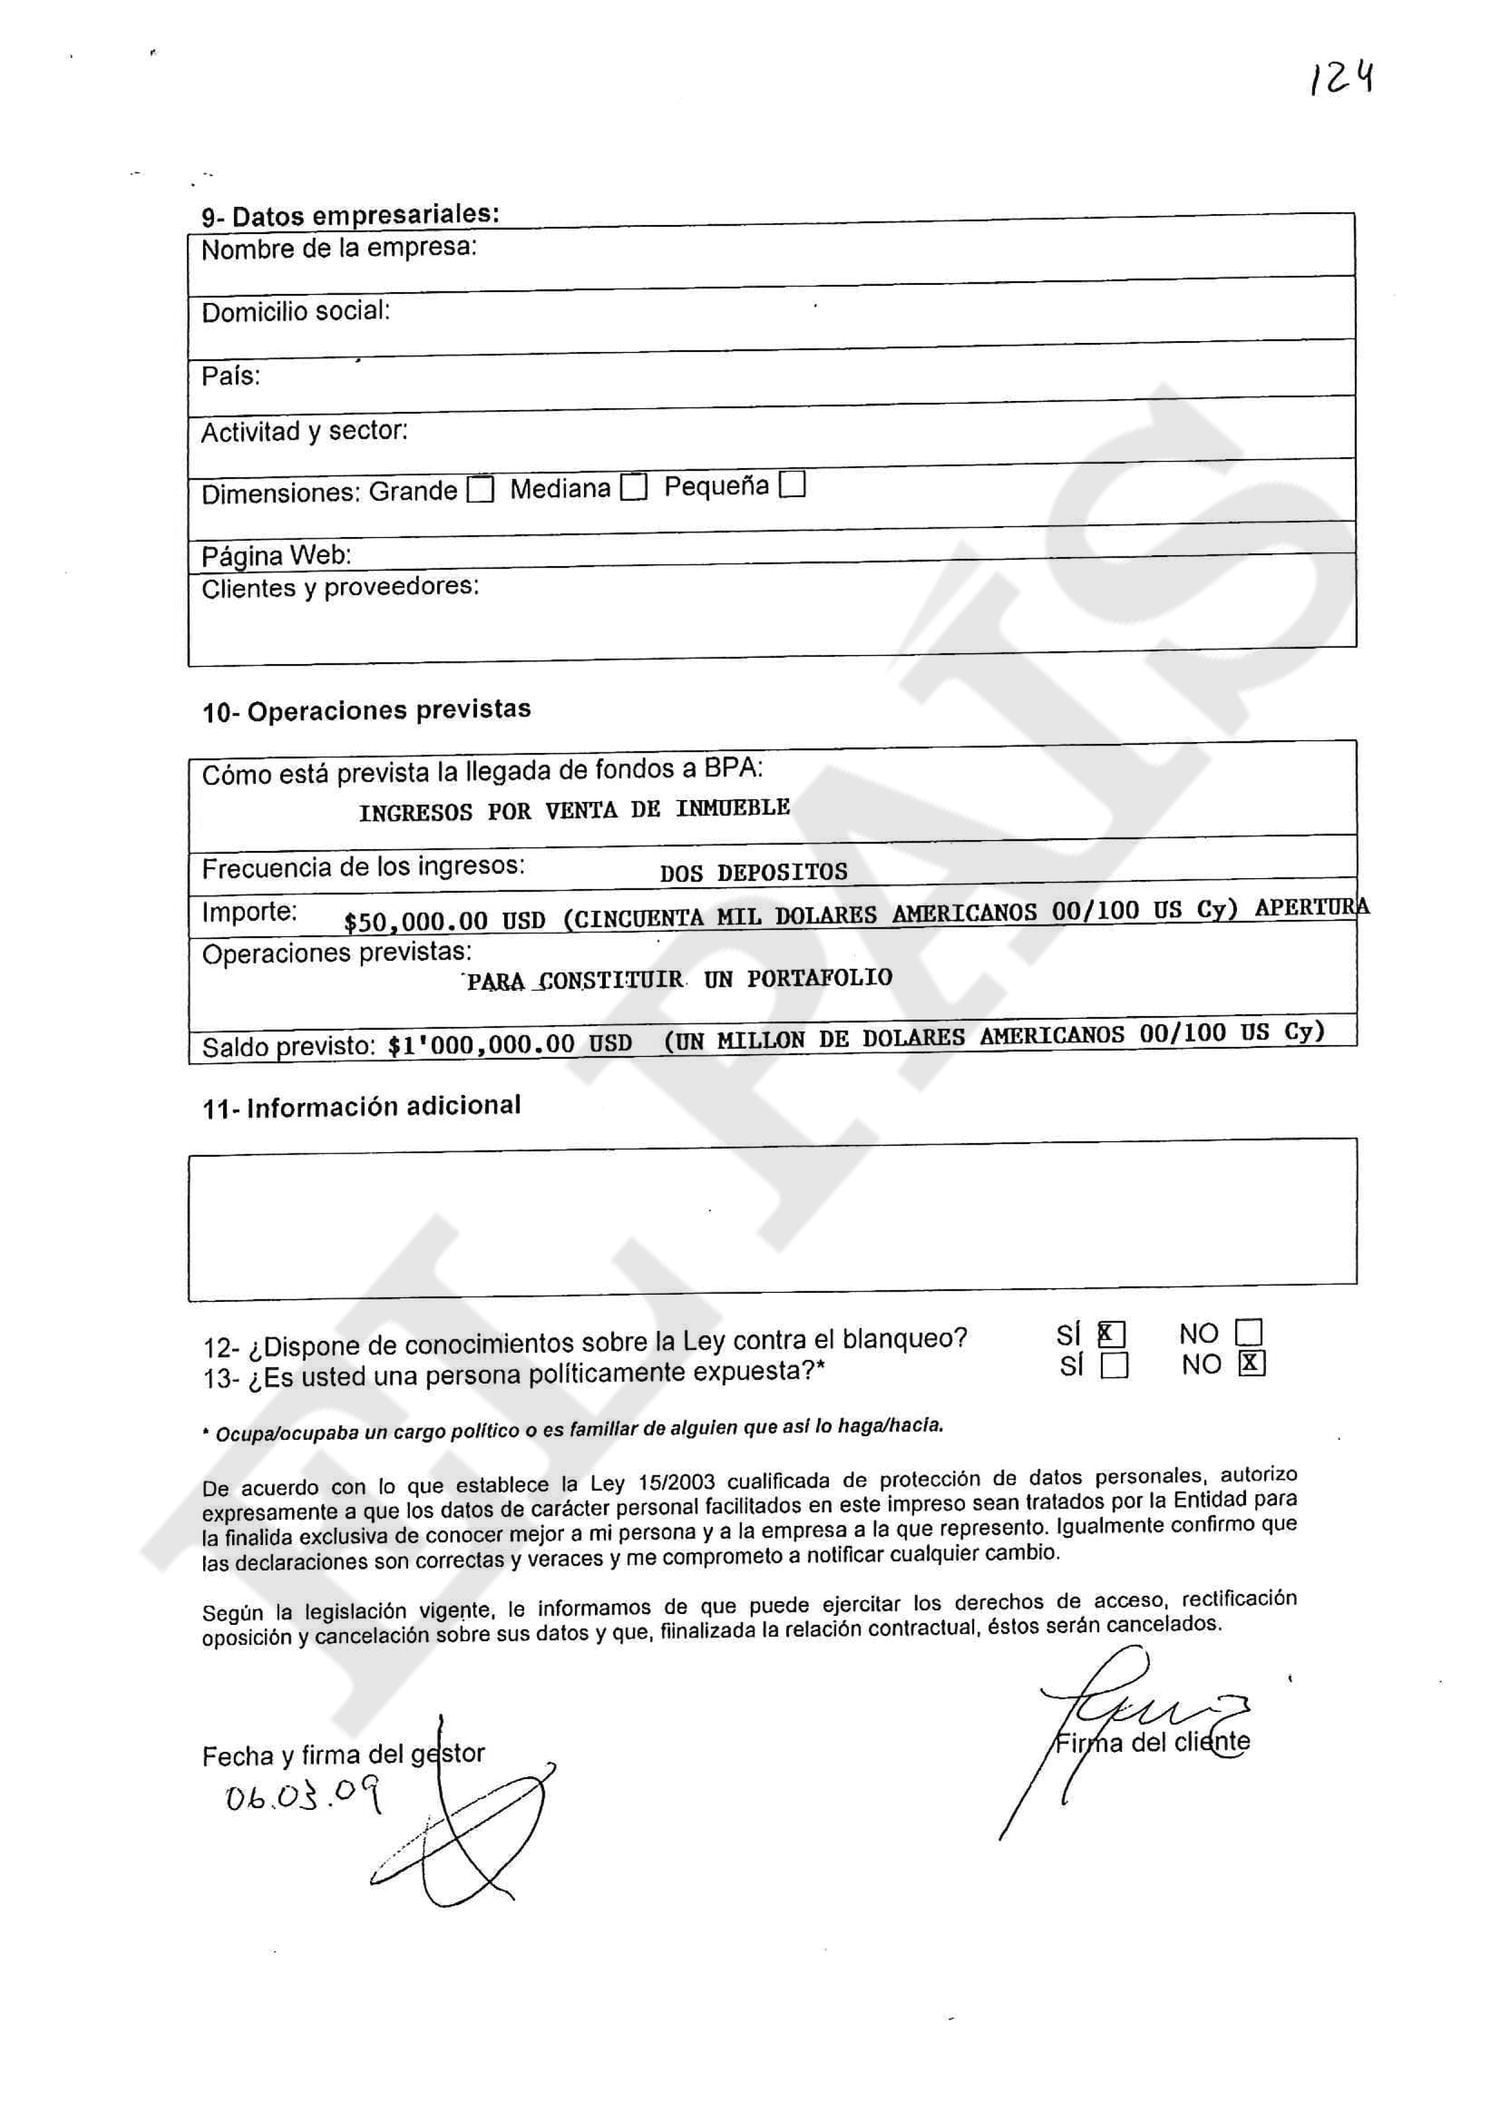 Segunda página del documento know your client (conozca a su cliente, en inglés) que rellenó en la Banca Privada d'Andorra (BPA) para abrir una cuenta en marzo de 2009 la senadora del PRI Sylvana Beltrones.